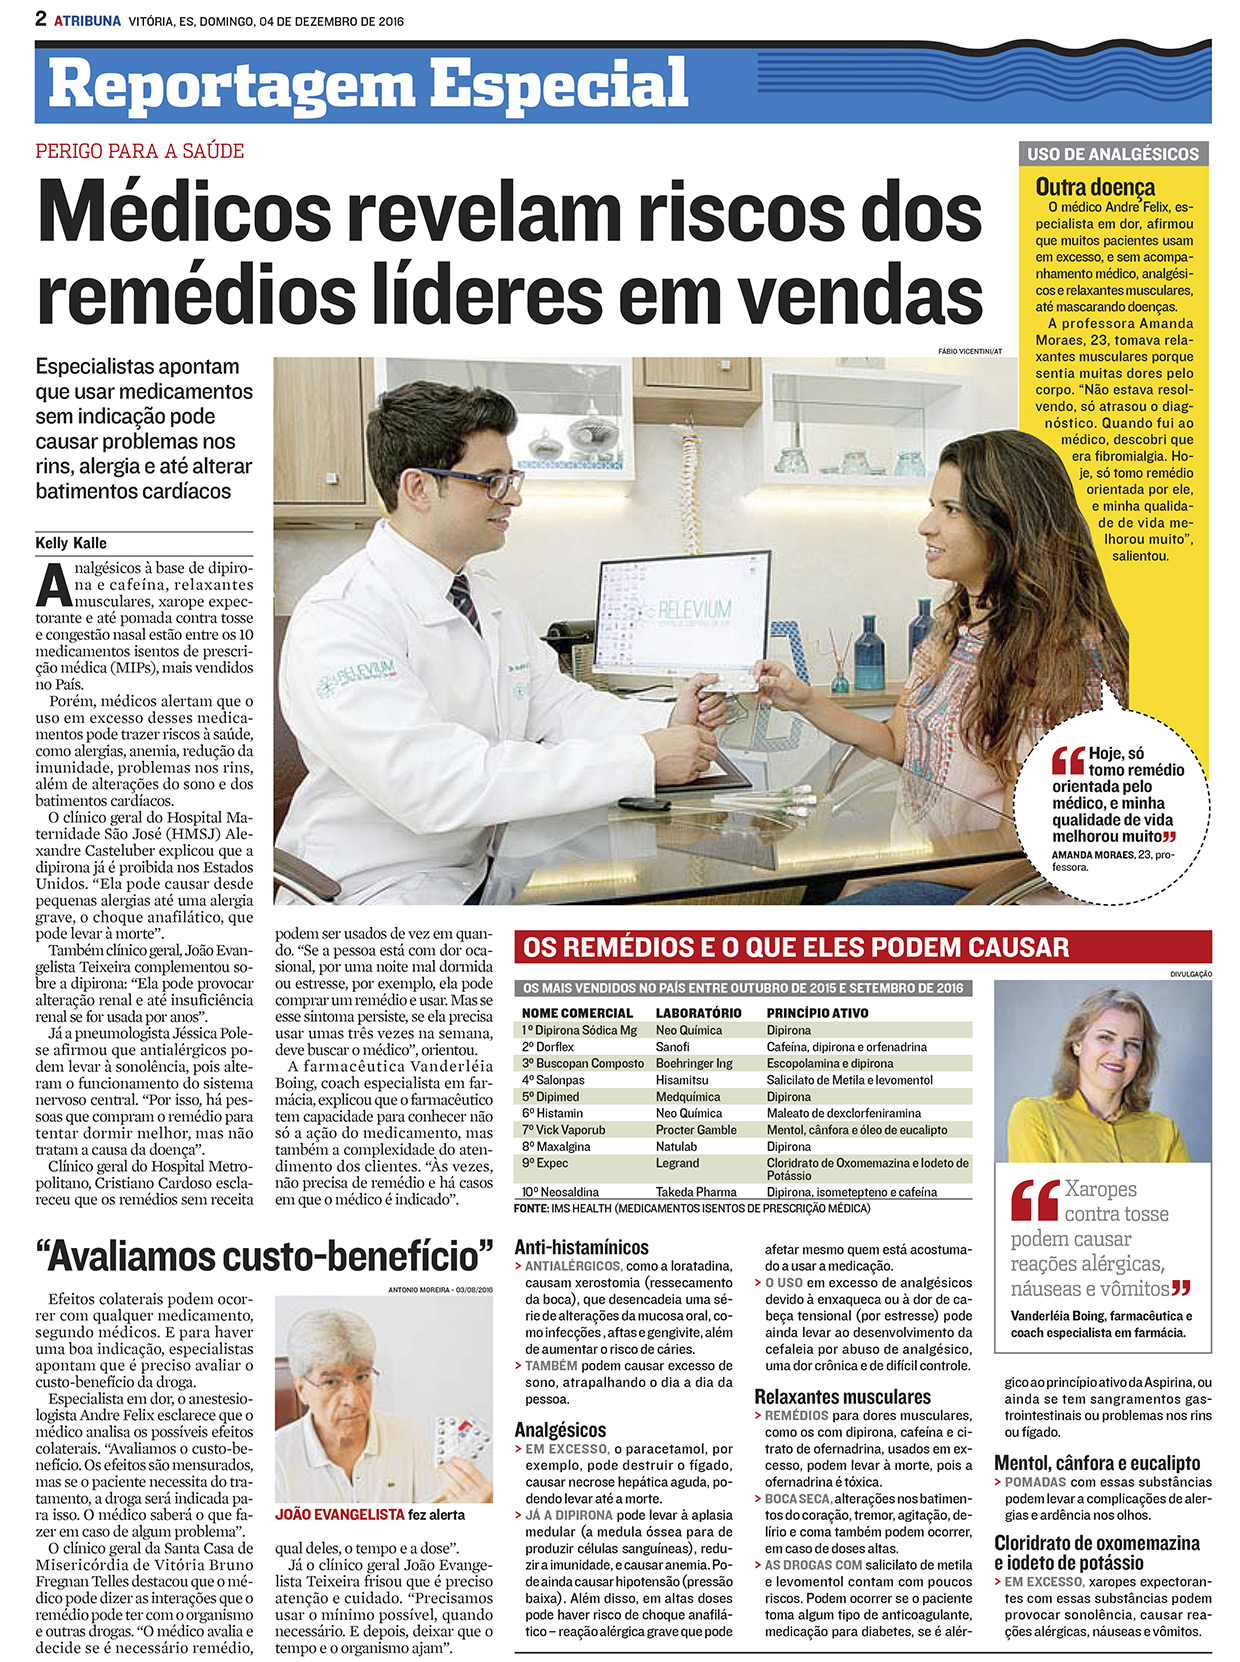 Médicos revelam riscos dos remédios líderes em vendas - A Tribuna